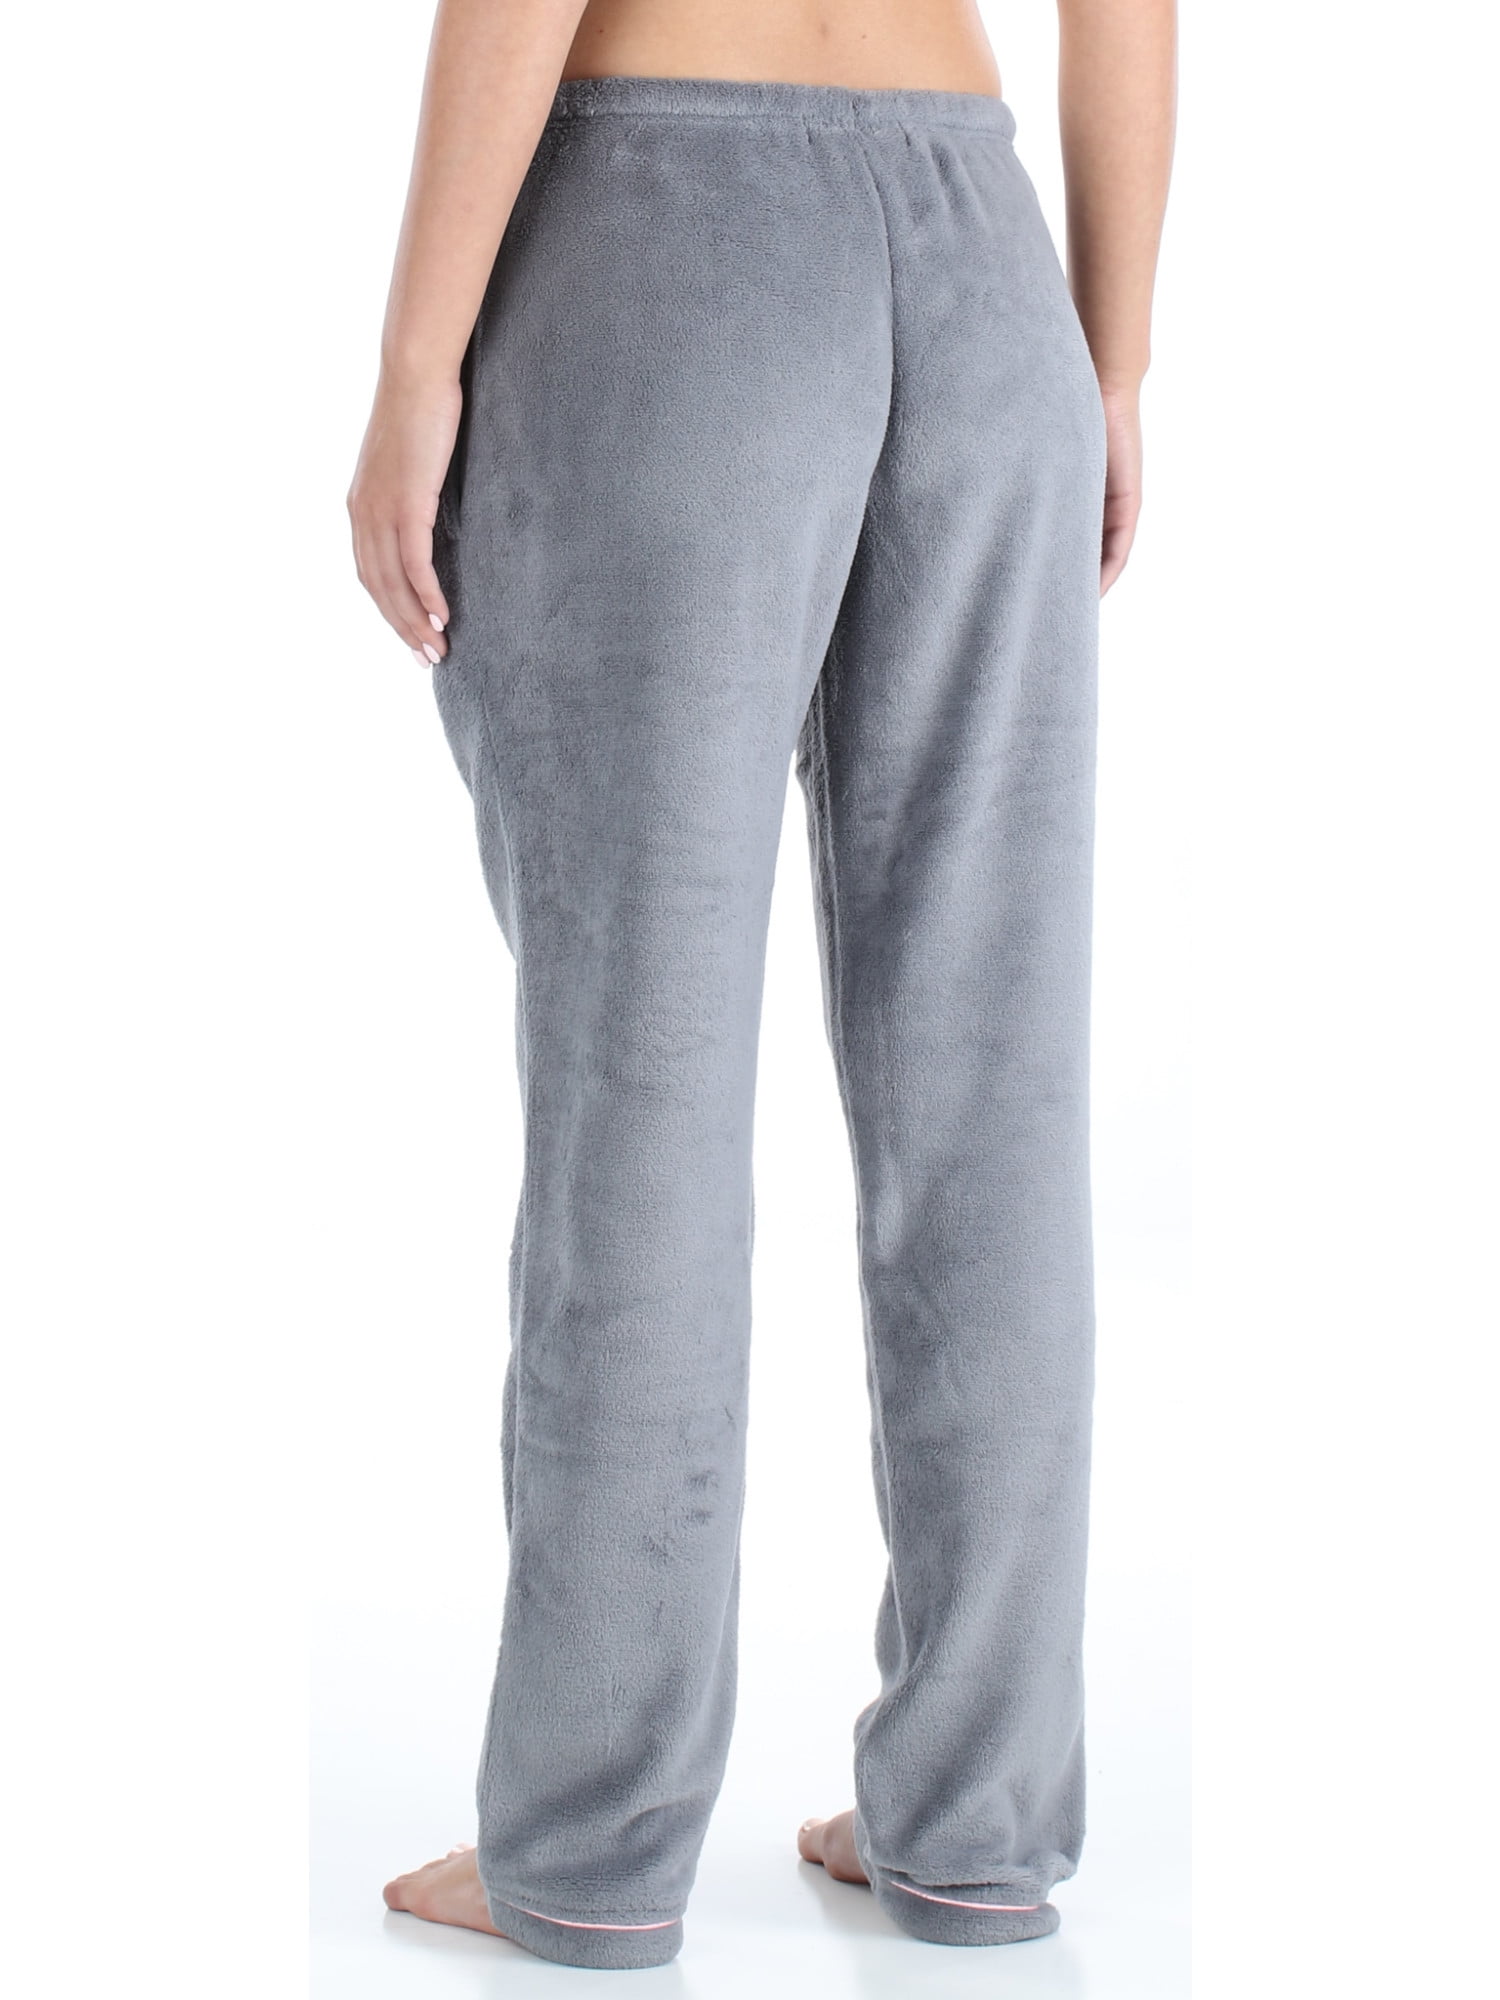 PajamaMania Women's Fleece Pajama Pants with Satin Drawstring